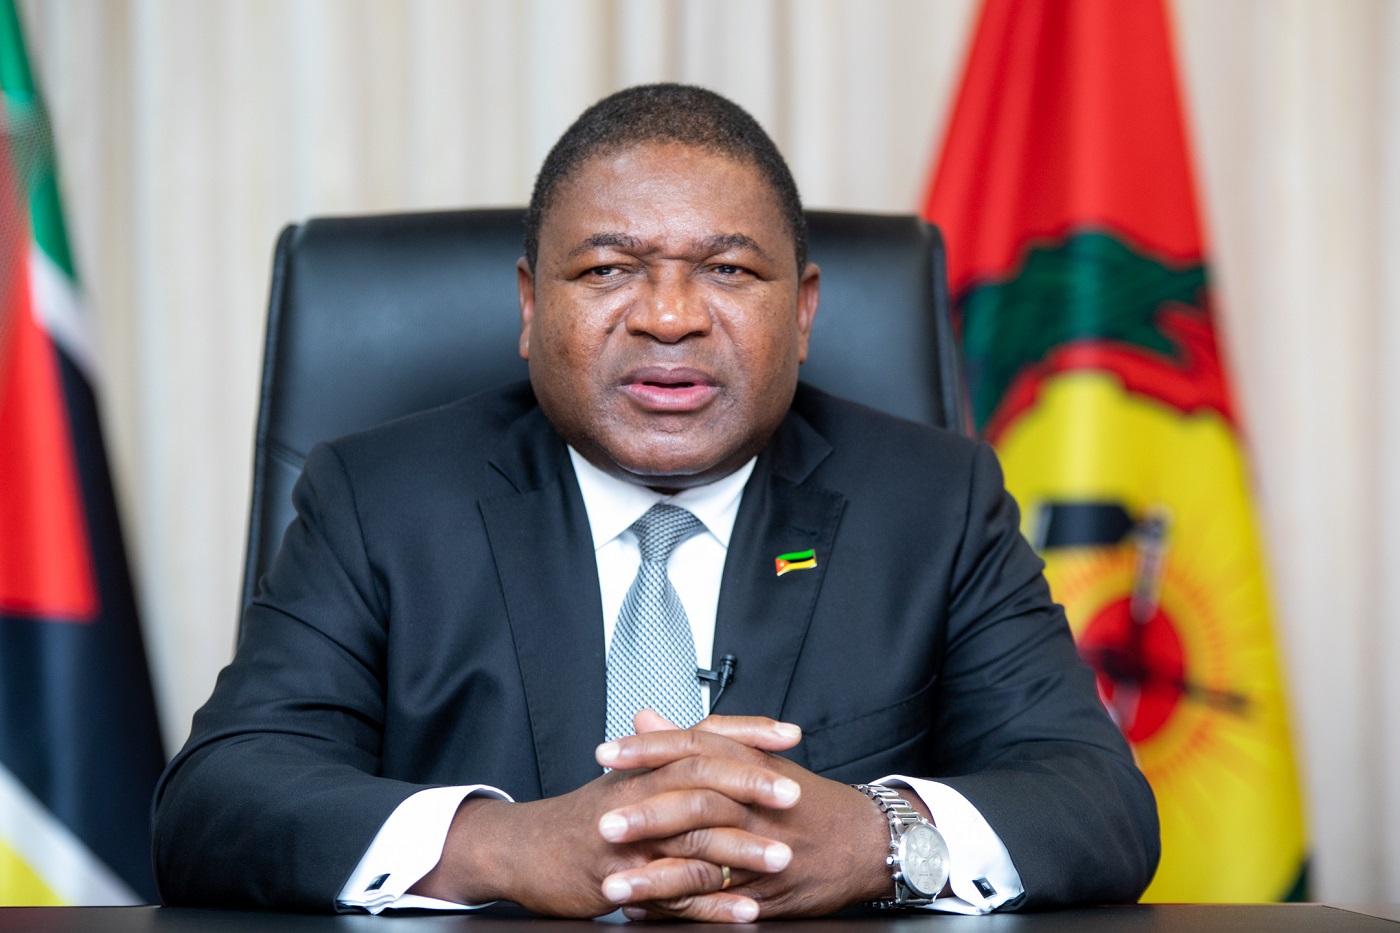 Privinvest acusa Moçambique de “apagar” Nyusi no caso das dívidas